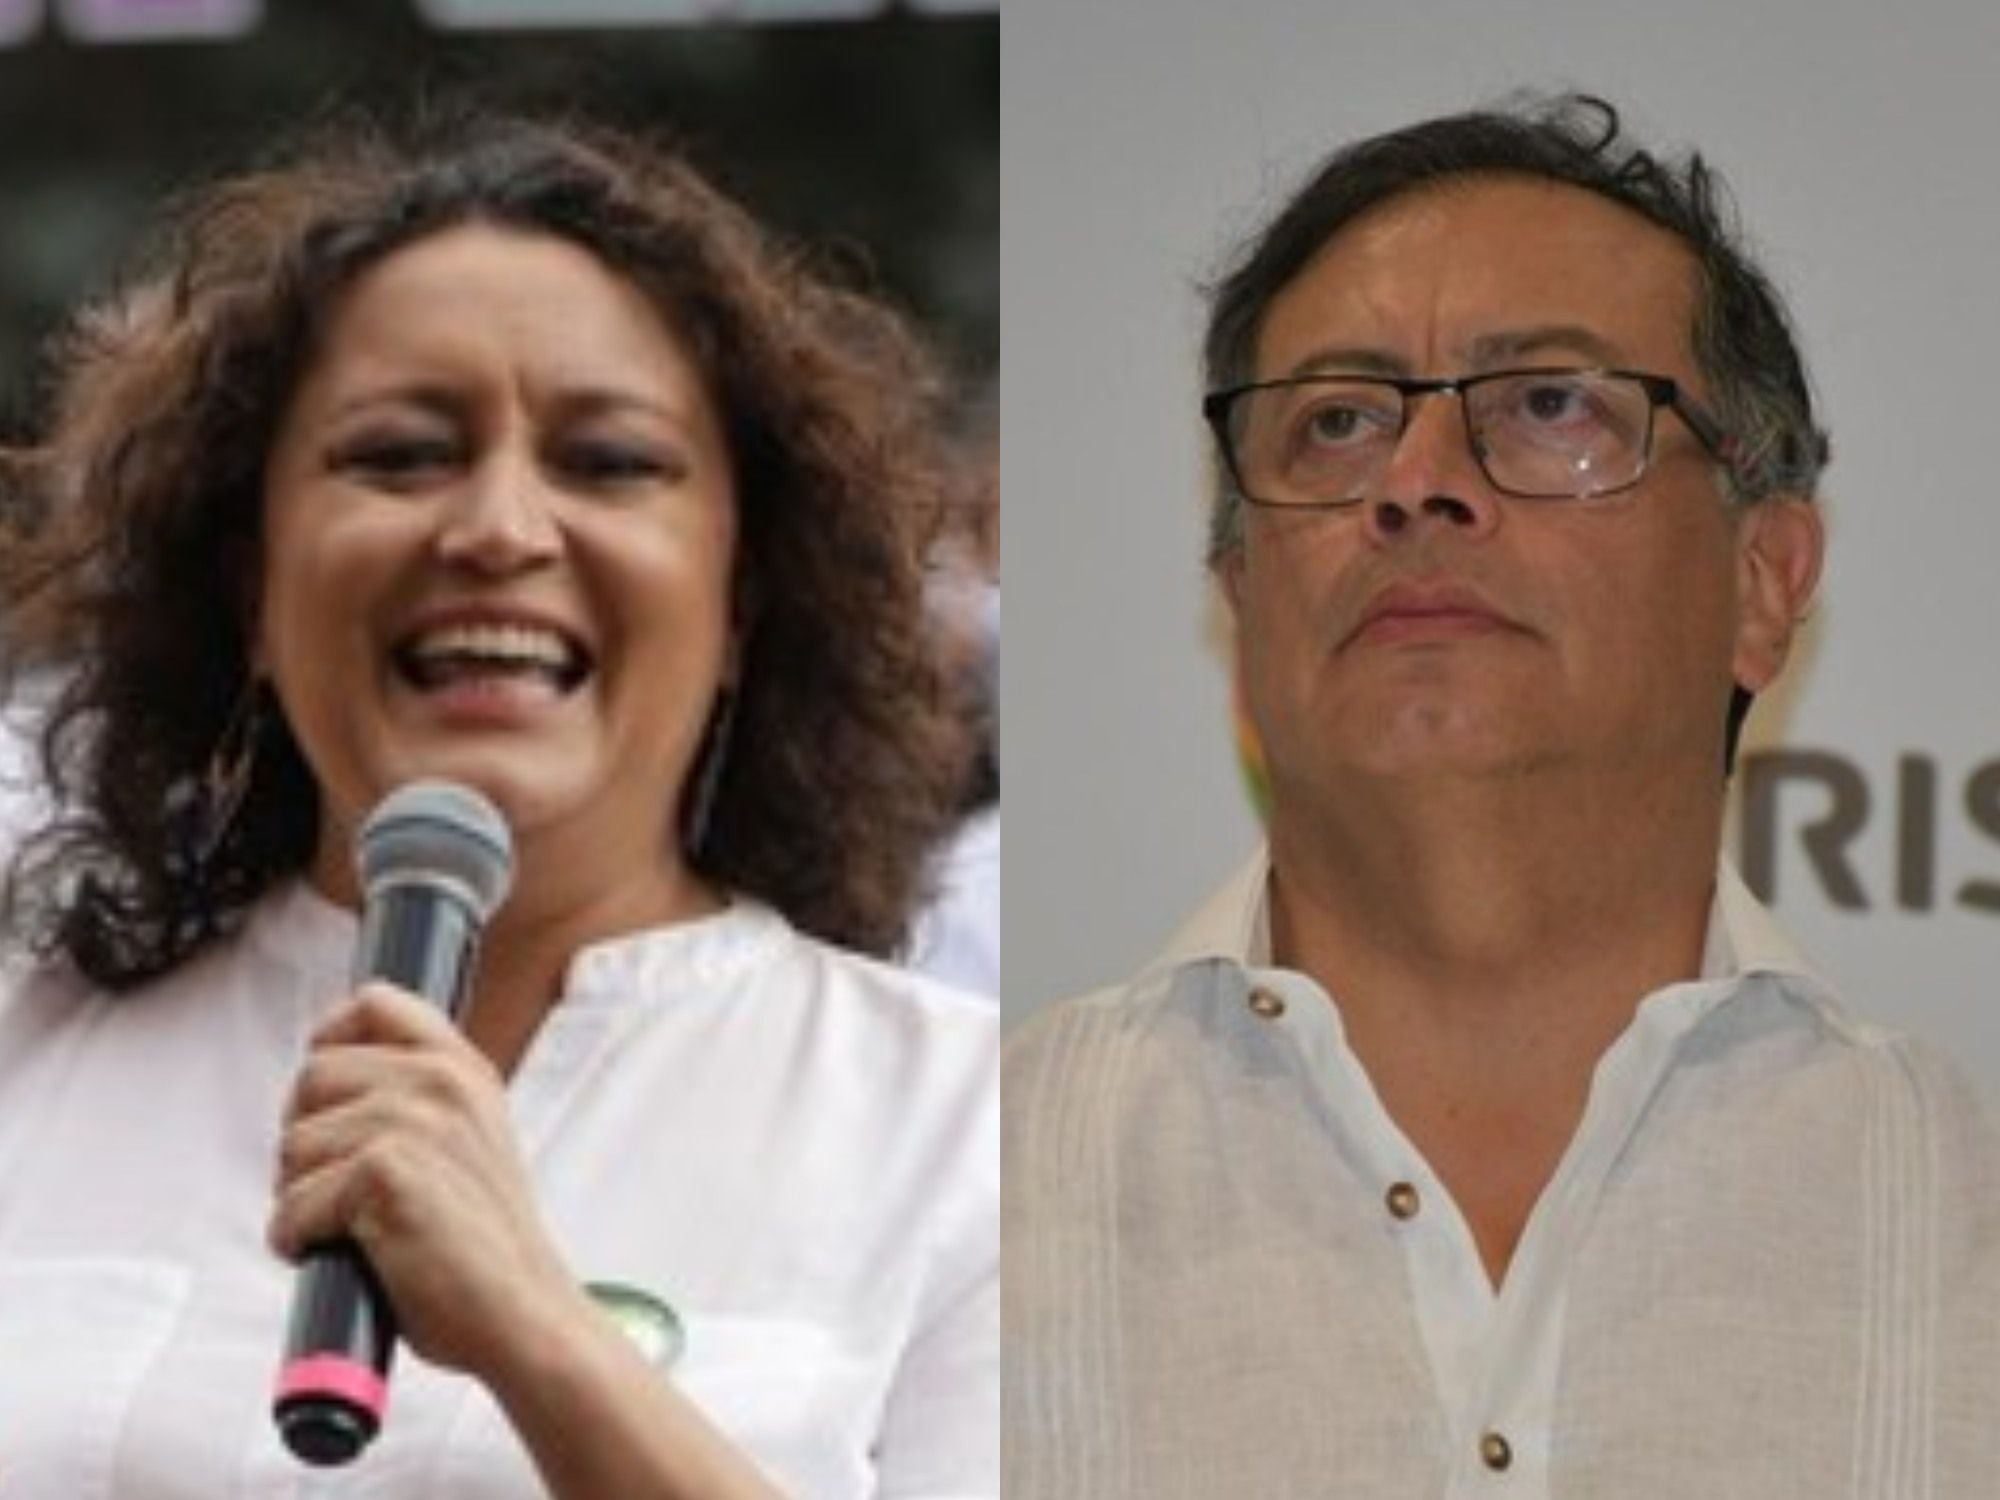 “Es abuso de poder”: Angélica Lozano dice que día cívico es una medida abusiva de Petro